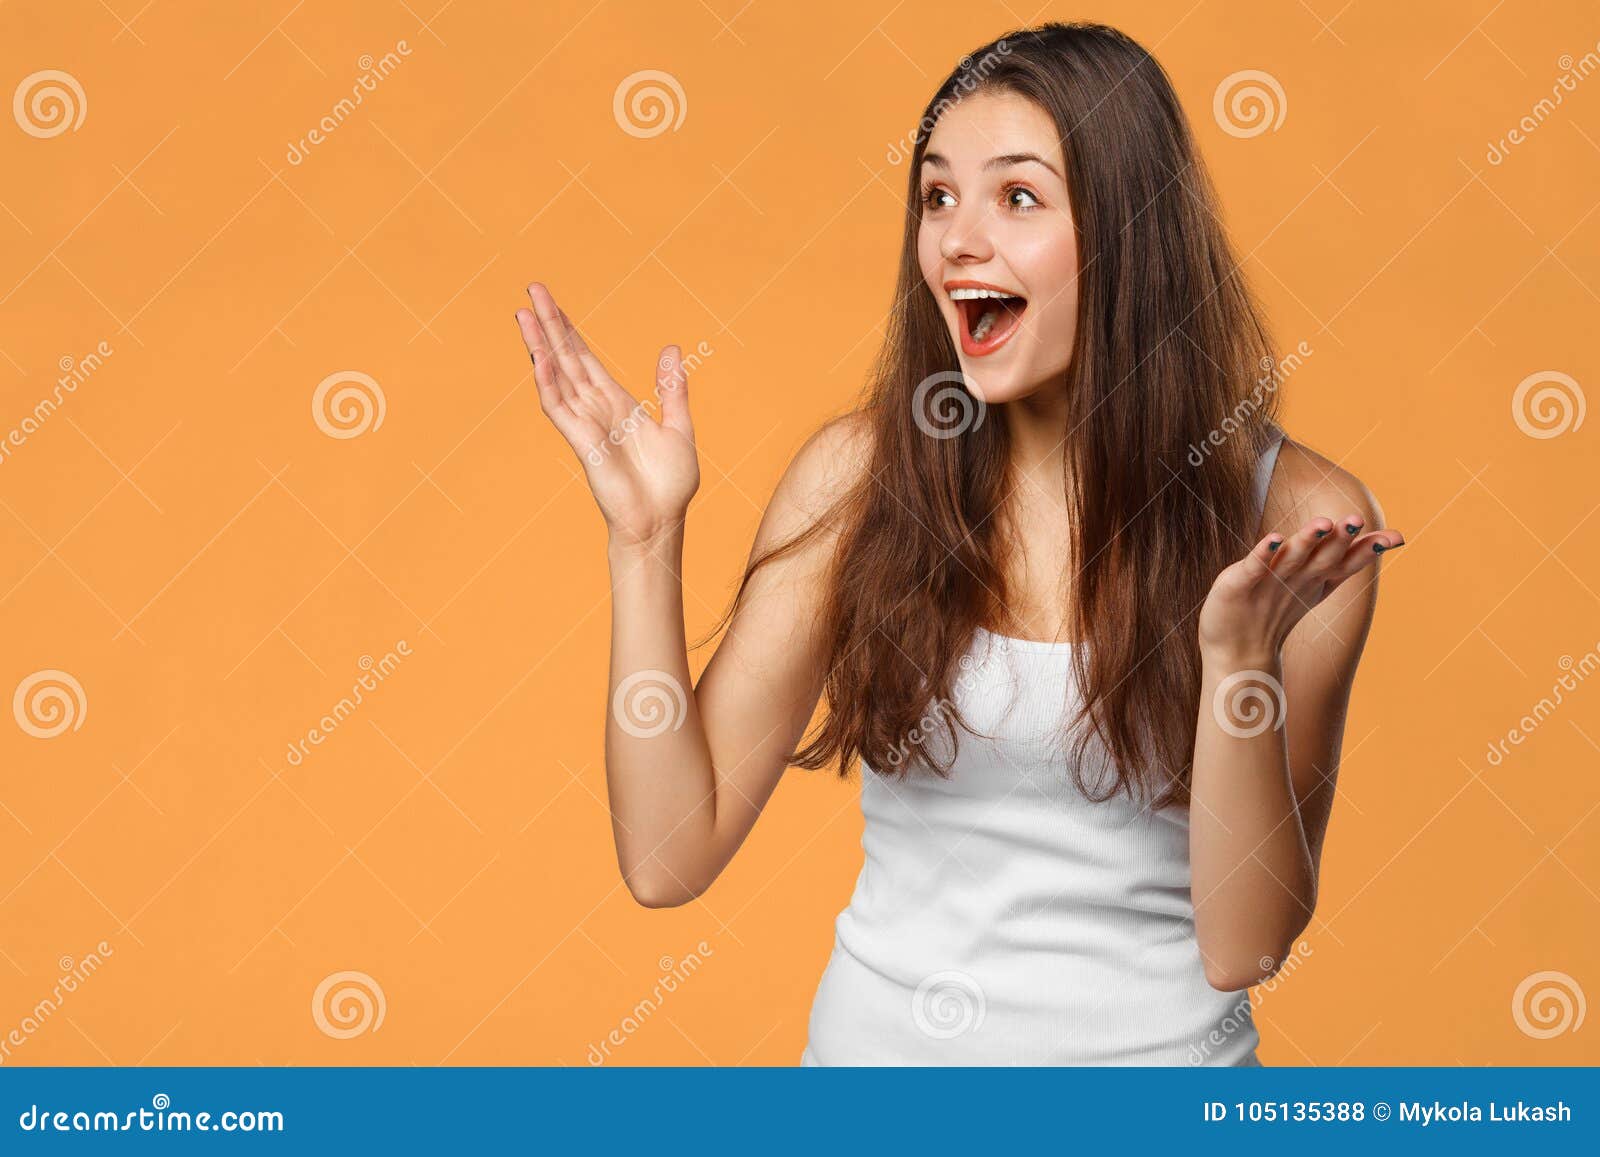 surprised happy beautiful woman looking sideways in excitement,  on orange background